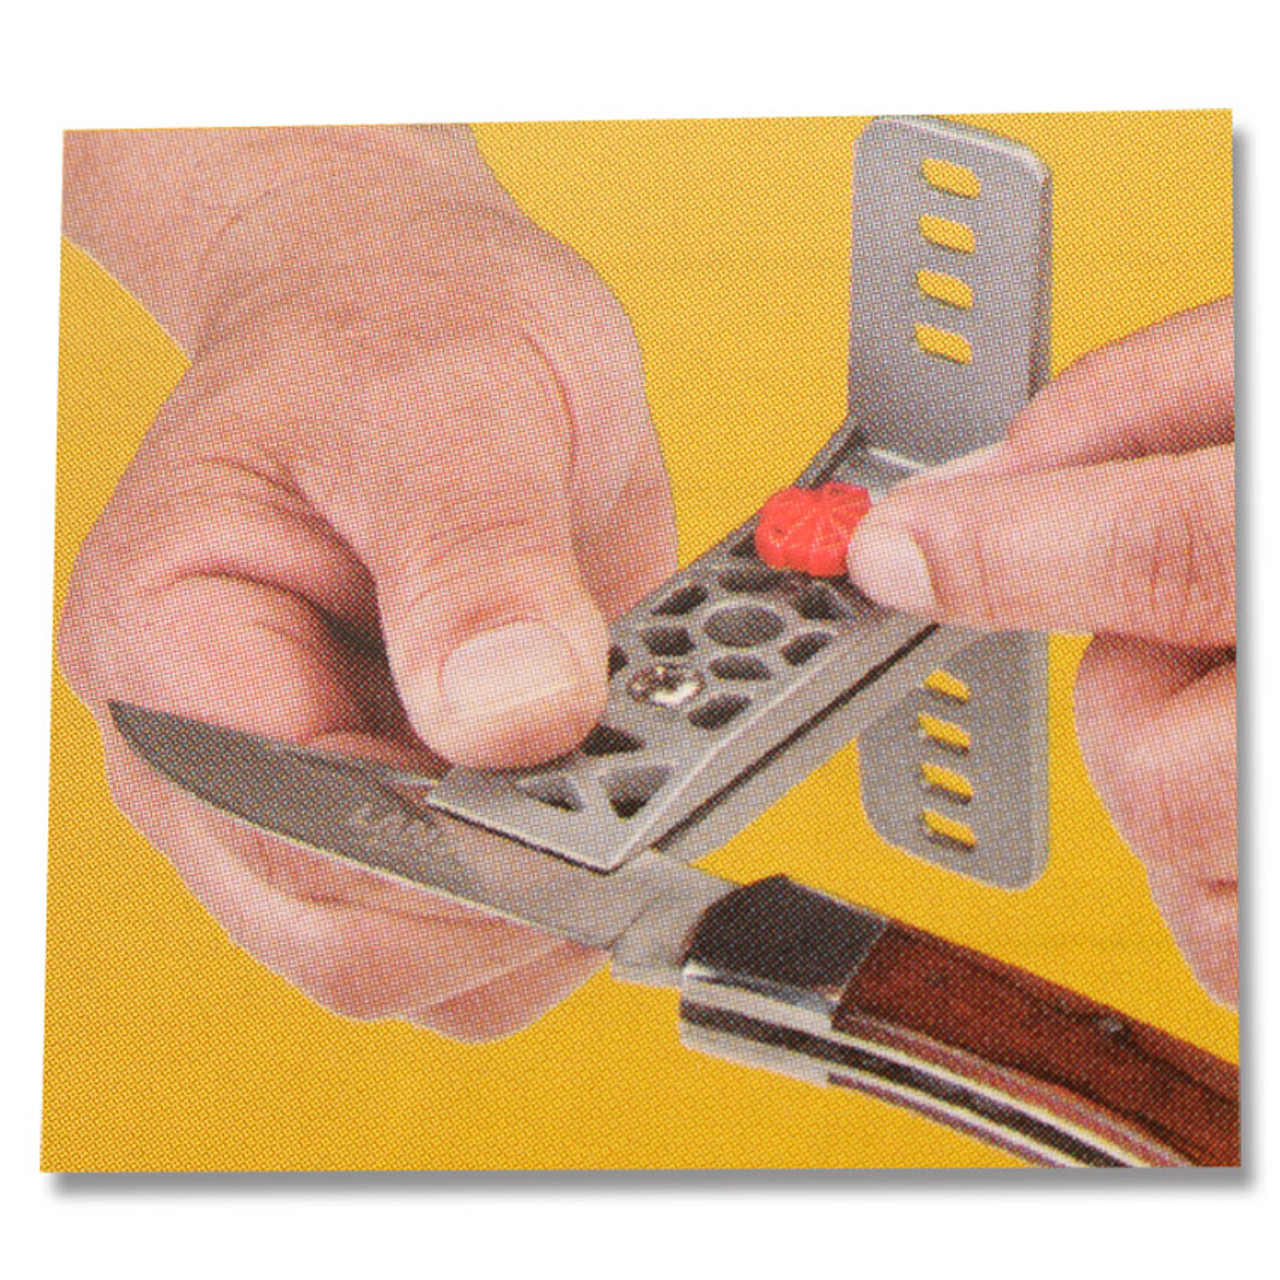 Lansky Standard Sharpening System - Smoky Mountain Knife Works